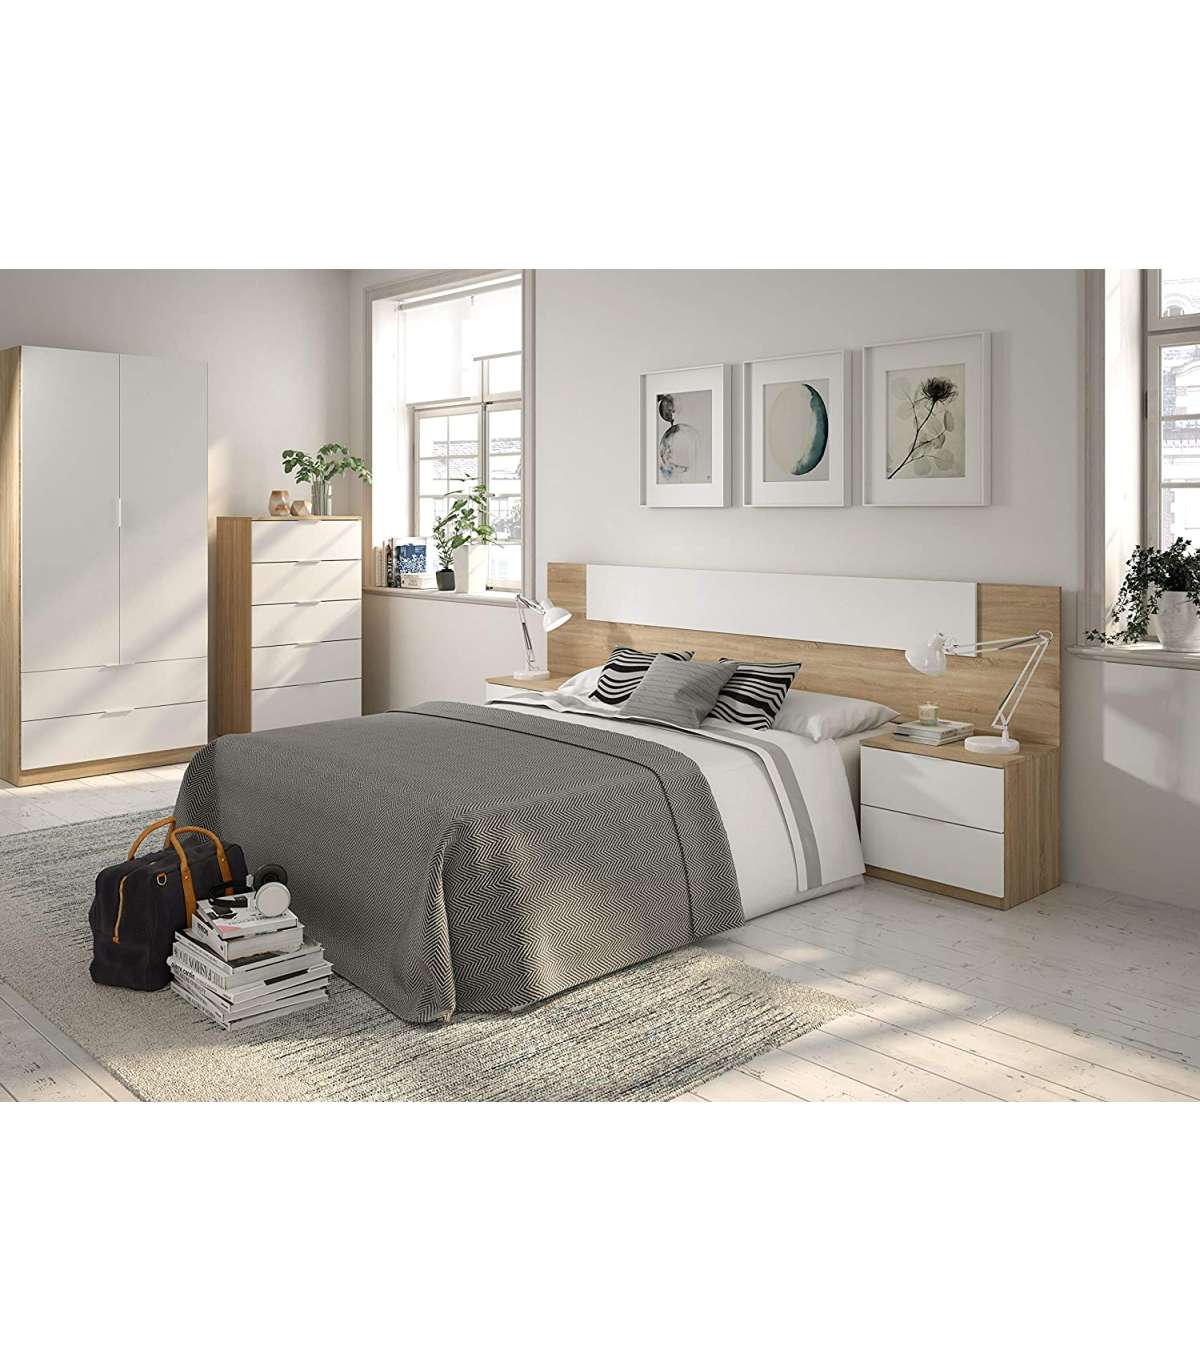 Armario ropero, ¿cómo elegir el ideal para tu dormitorio?